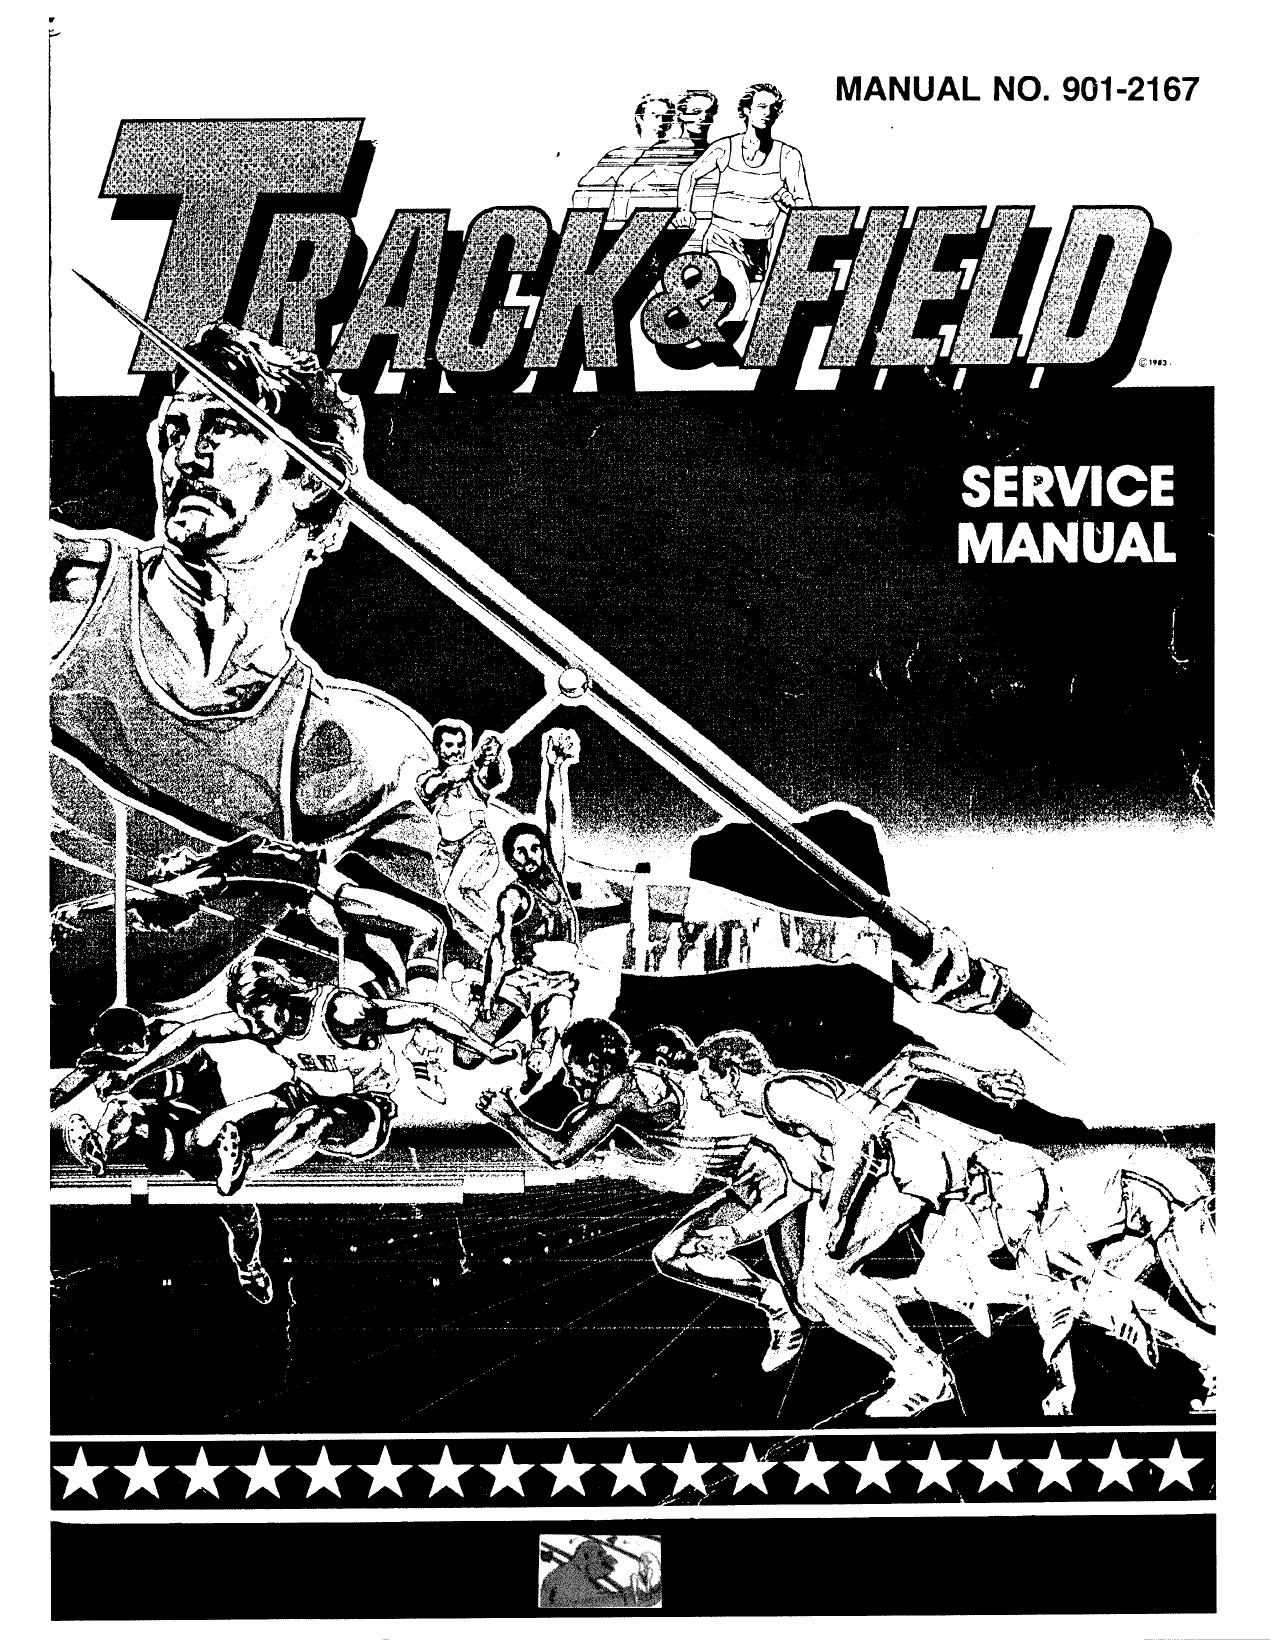 Track&Field Manual